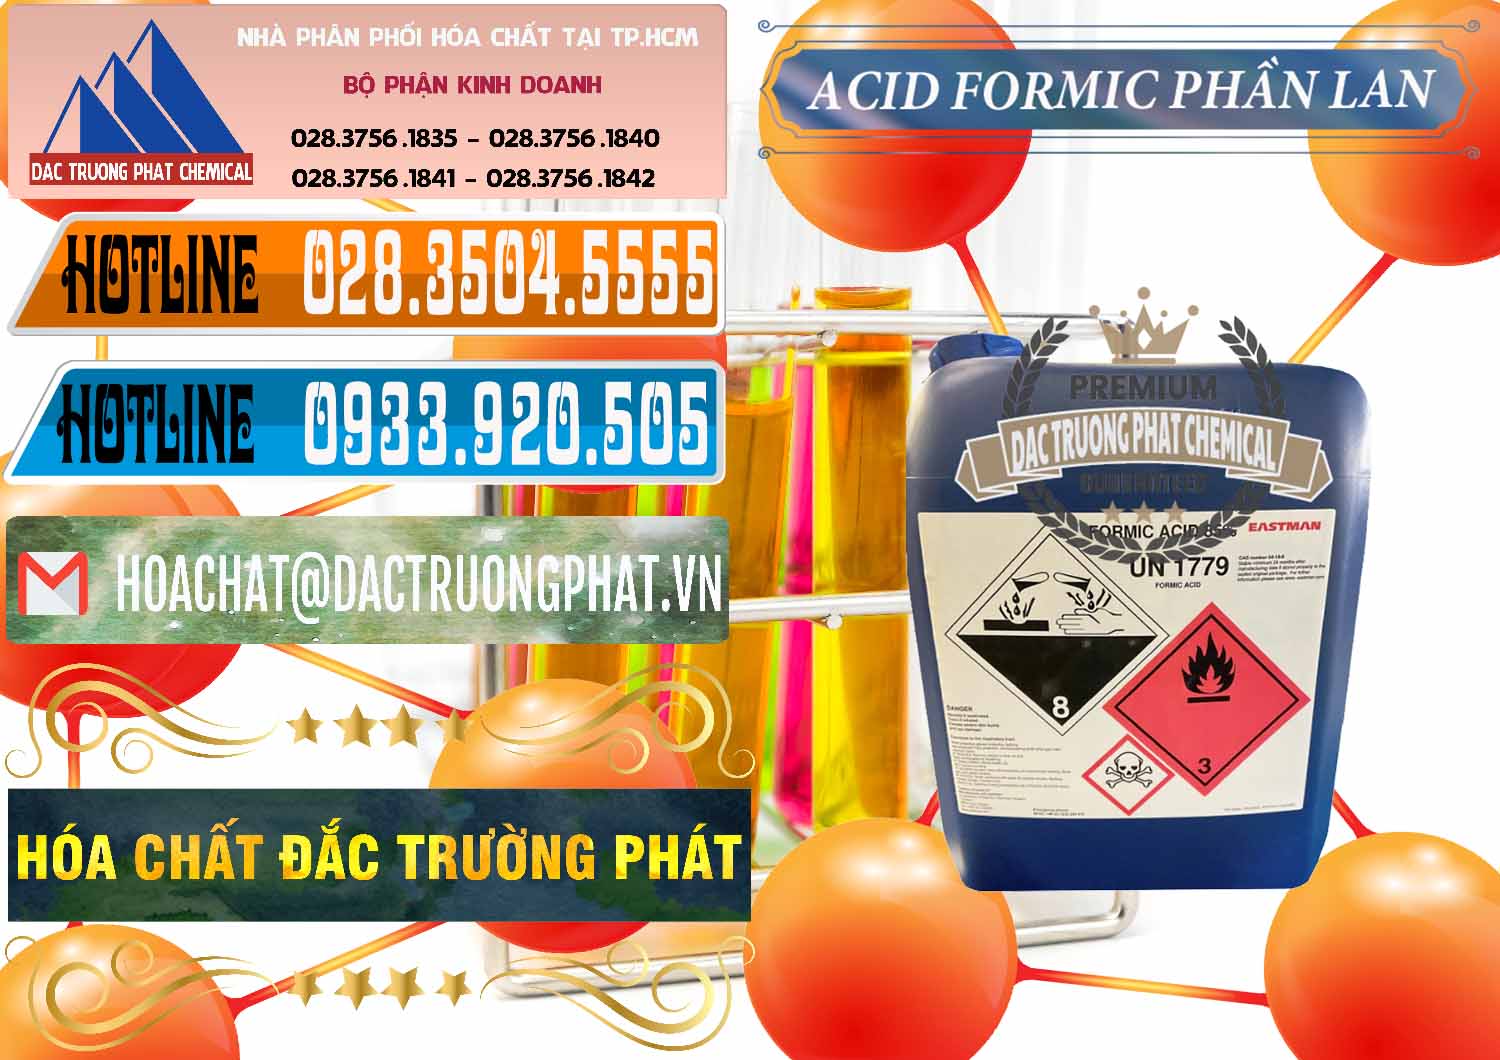 Cty chuyên bán ( phân phối ) Acid Formic - Axit Formic Phần Lan Finland - 0376 - Công ty chuyên kinh doanh - cung cấp hóa chất tại TP.HCM - stmp.net